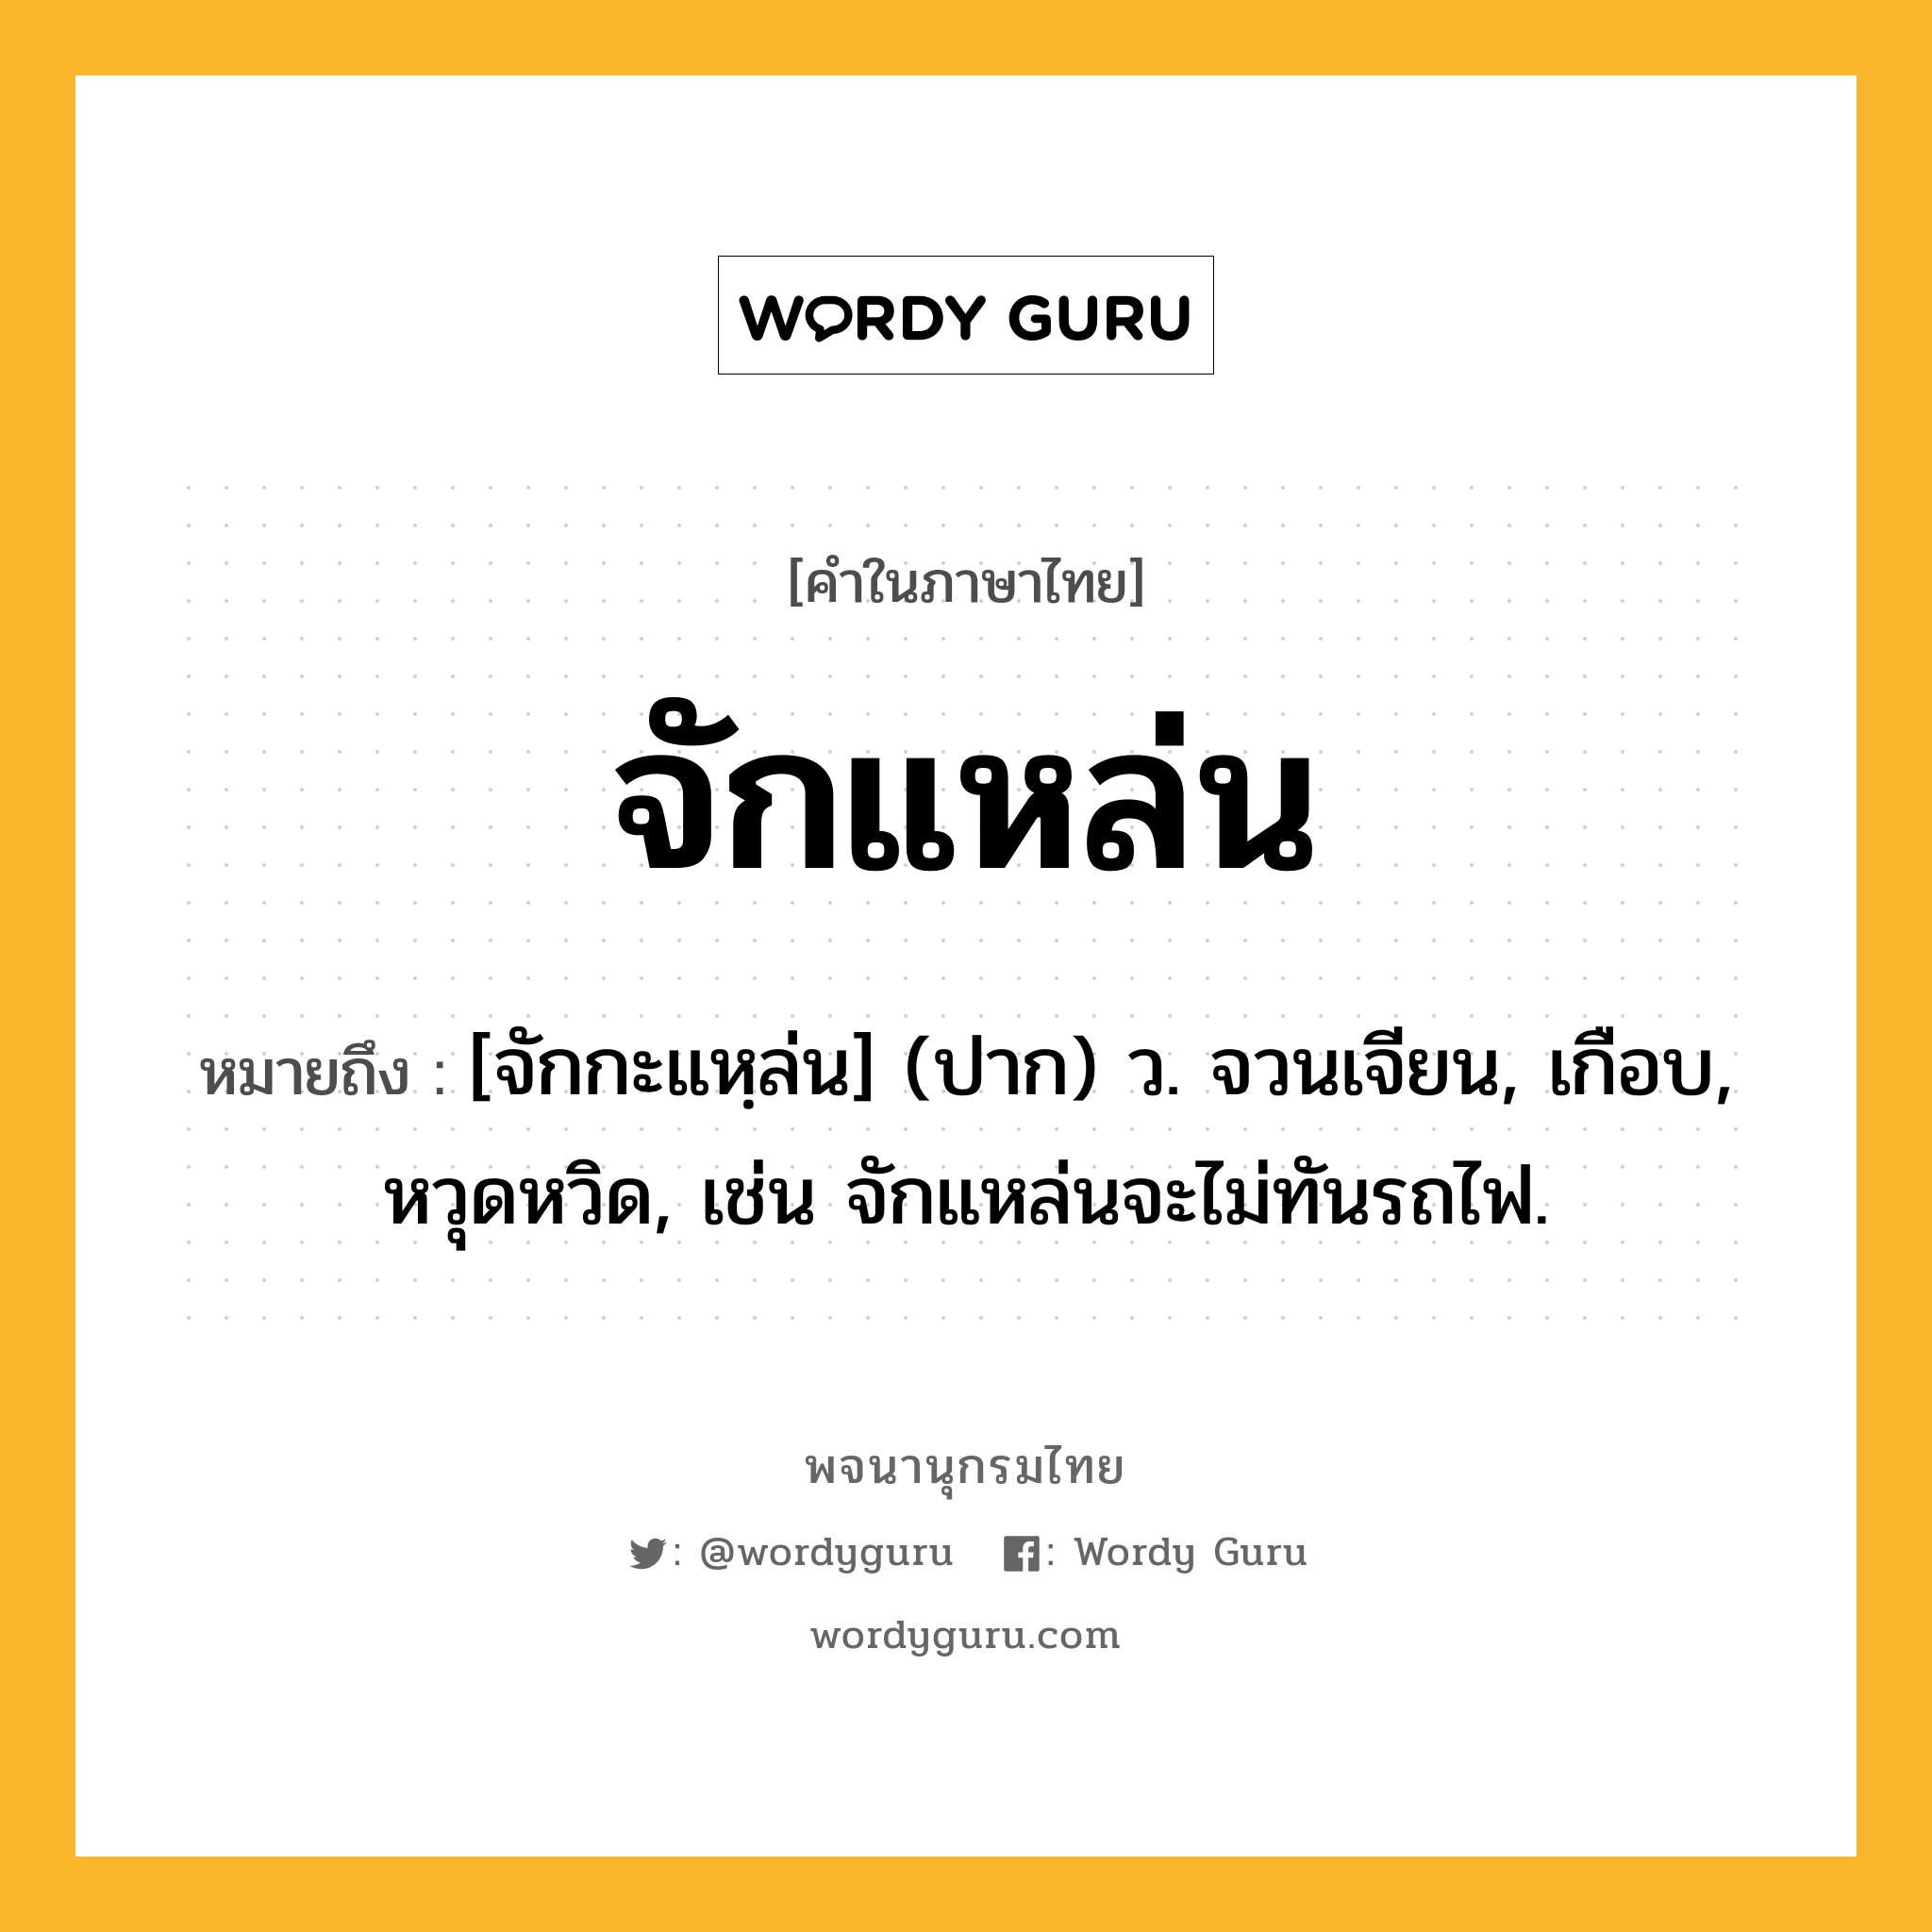 จักแหล่น หมายถึงอะไร?, คำในภาษาไทย จักแหล่น หมายถึง [จักกะแหฺล่น] (ปาก) ว. จวนเจียน, เกือบ, หวุดหวิด, เช่น จักแหล่นจะไม่ทันรถไฟ.